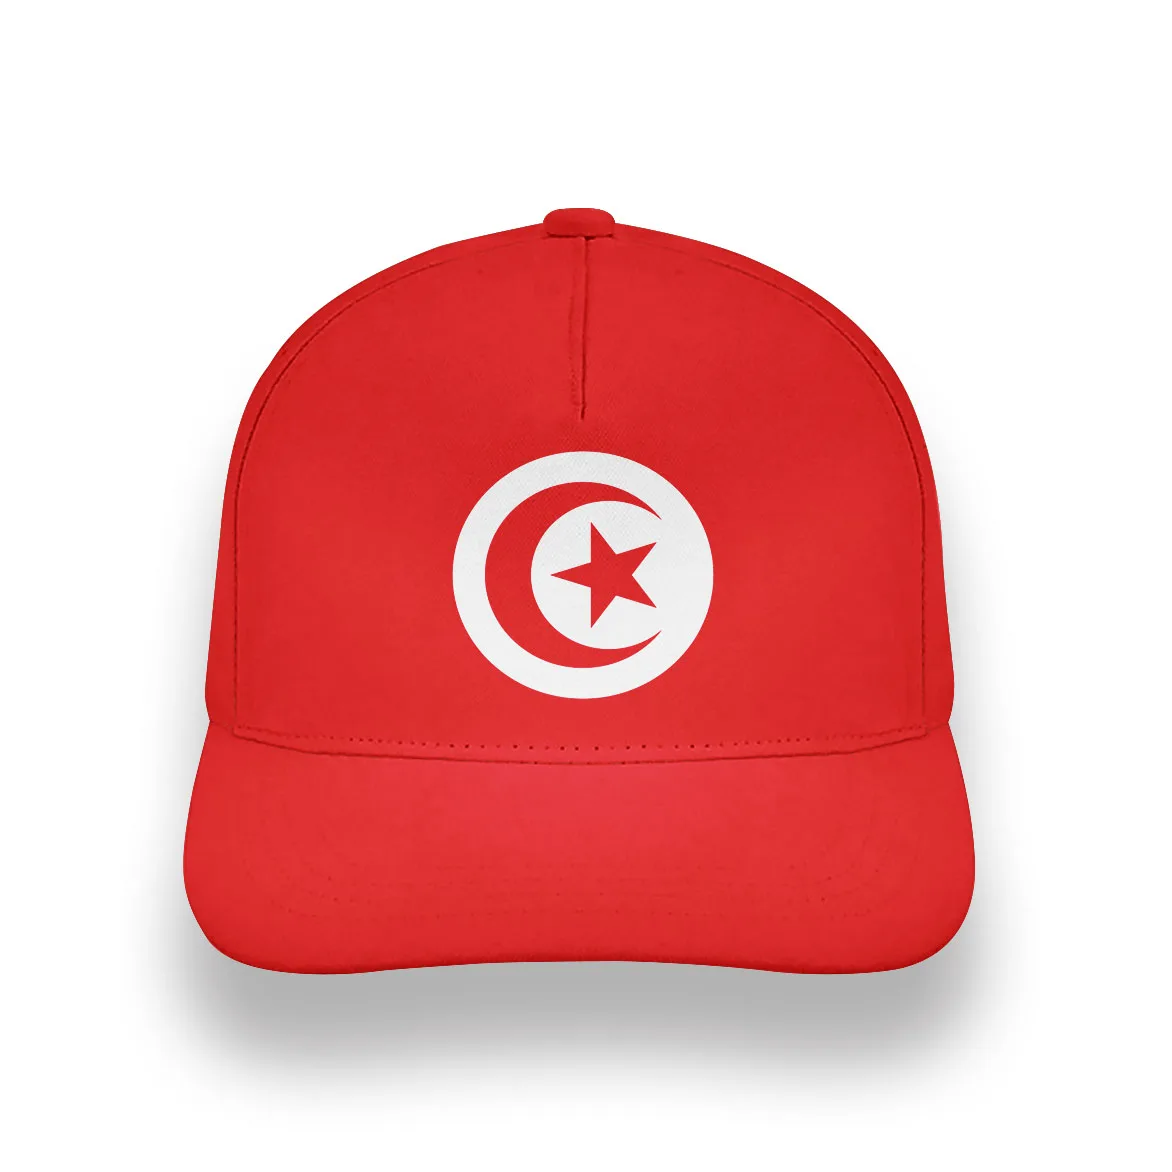 TUNUS gençlik dıy ücretsiz özel ad numarası tun şapka ulusal bayrak tunisie tn islam arapça arap tunus baskı fotoğraf beyzbol şapkası 4